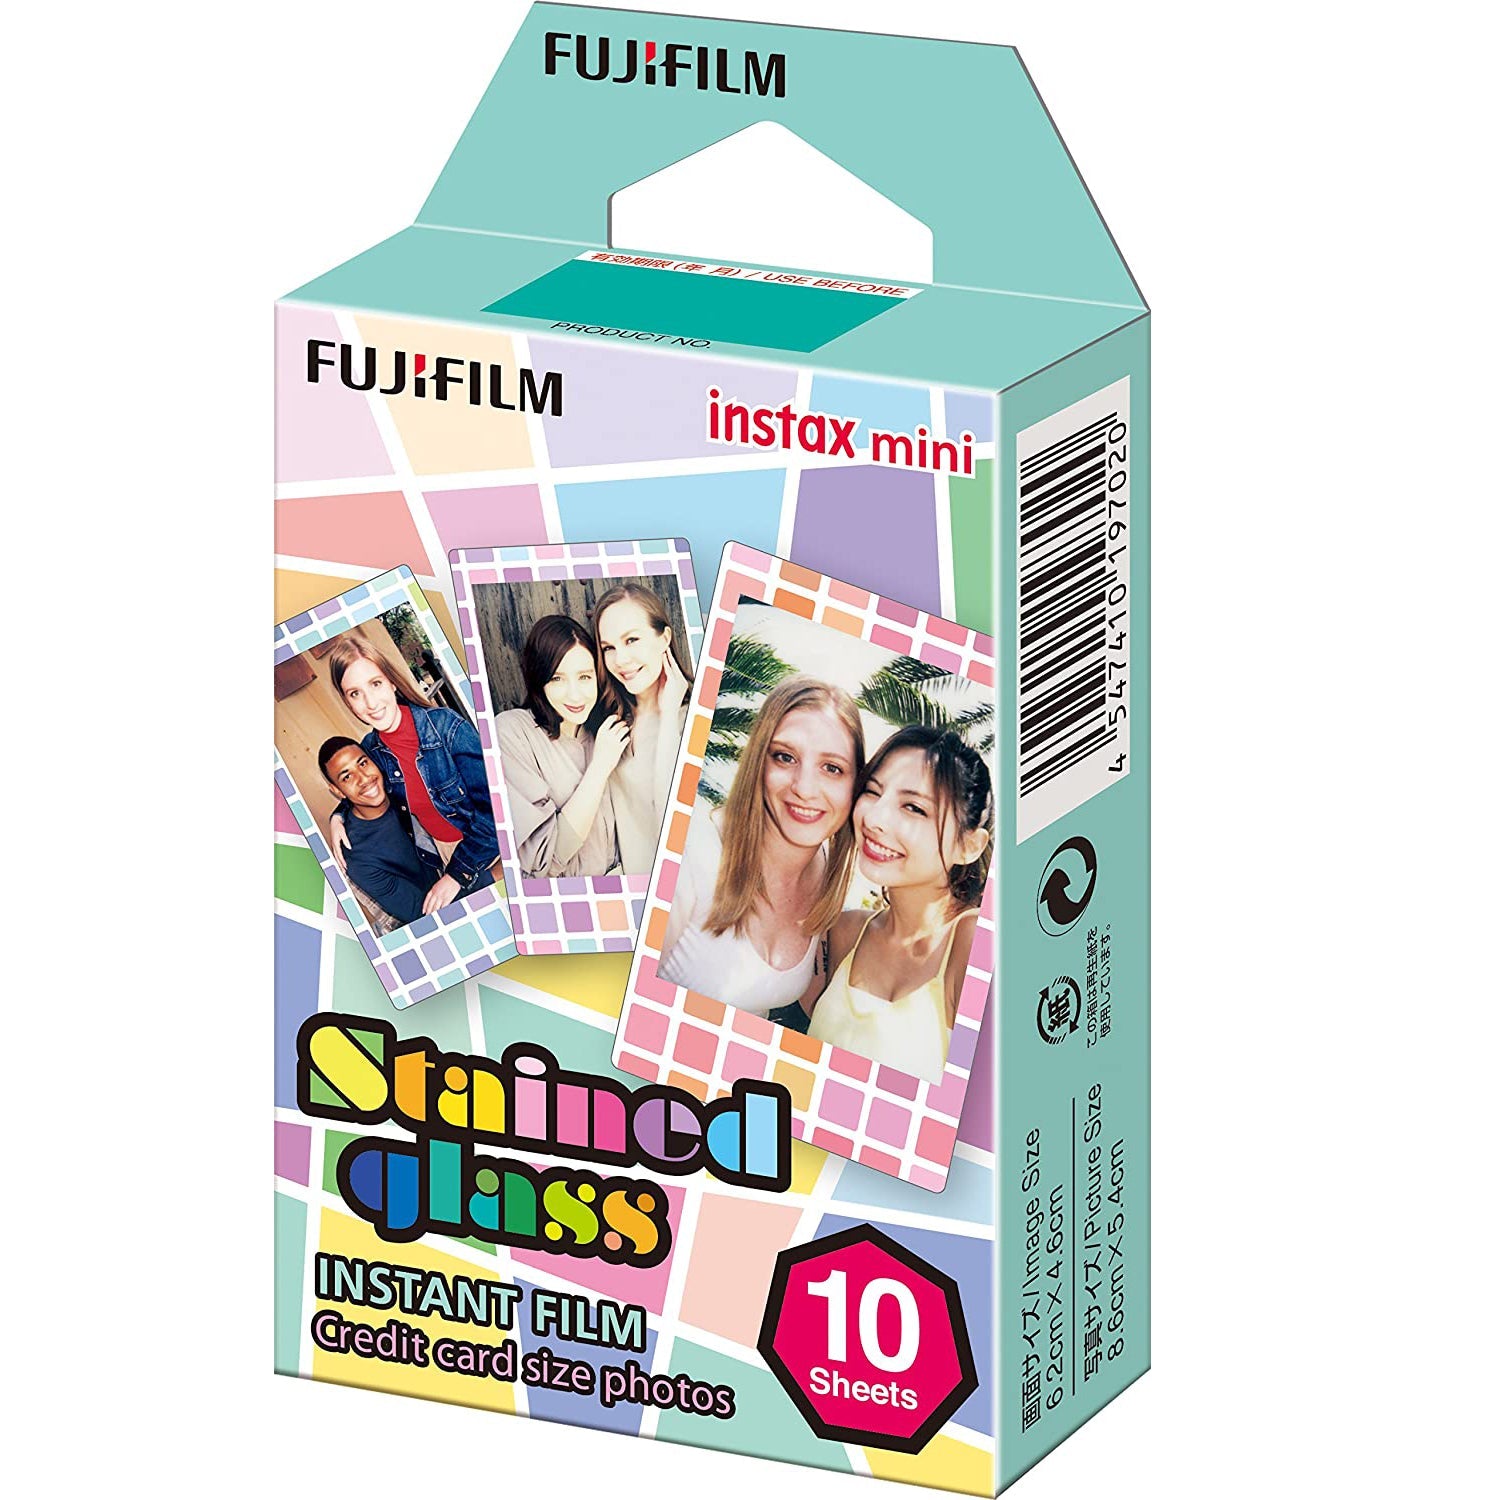 Fujifilm Instax Mini 10X1 Stained Glass instant Film